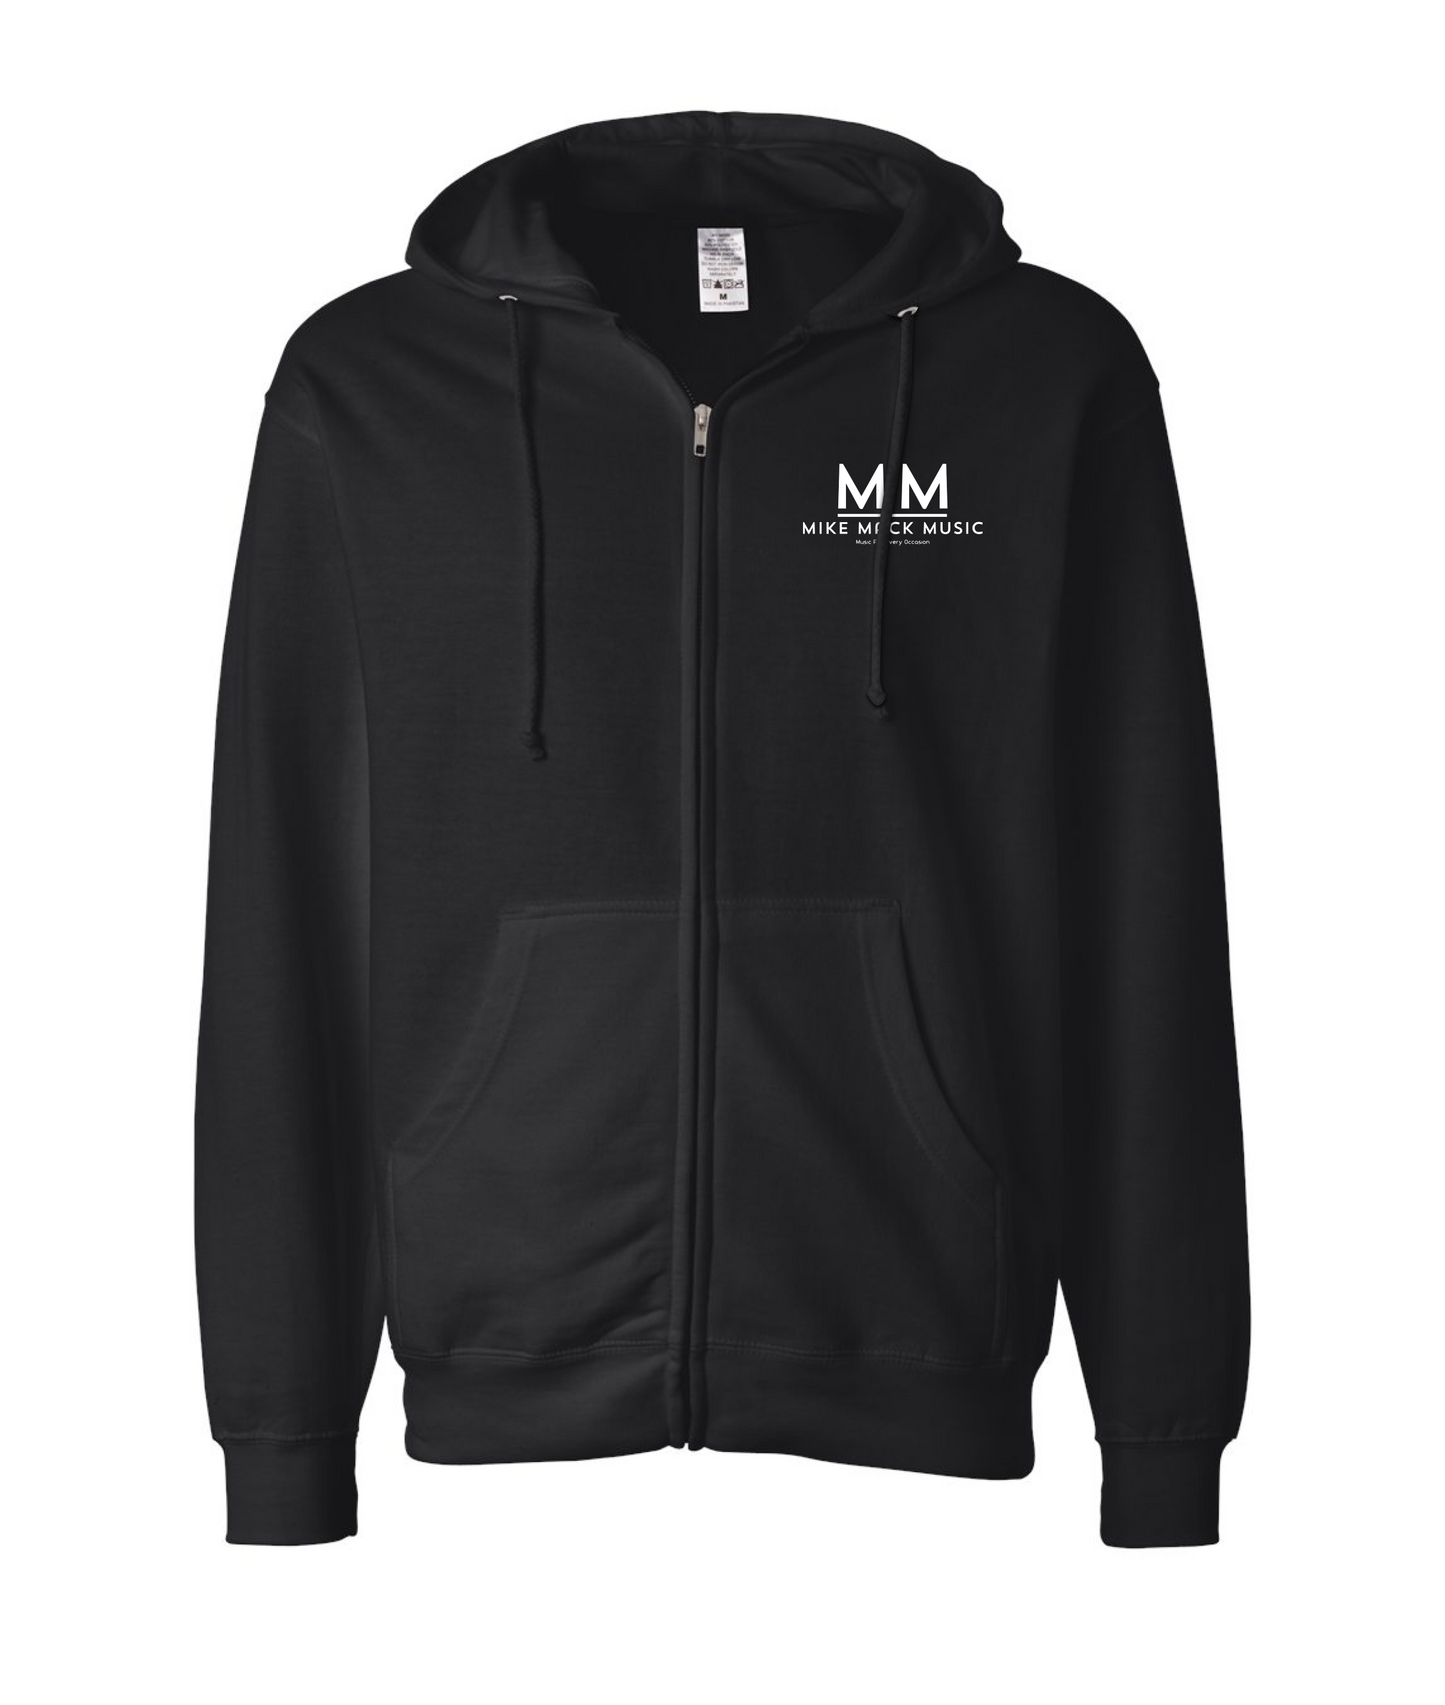 Mike Mack Music - Logo - Black Zip Hoodie